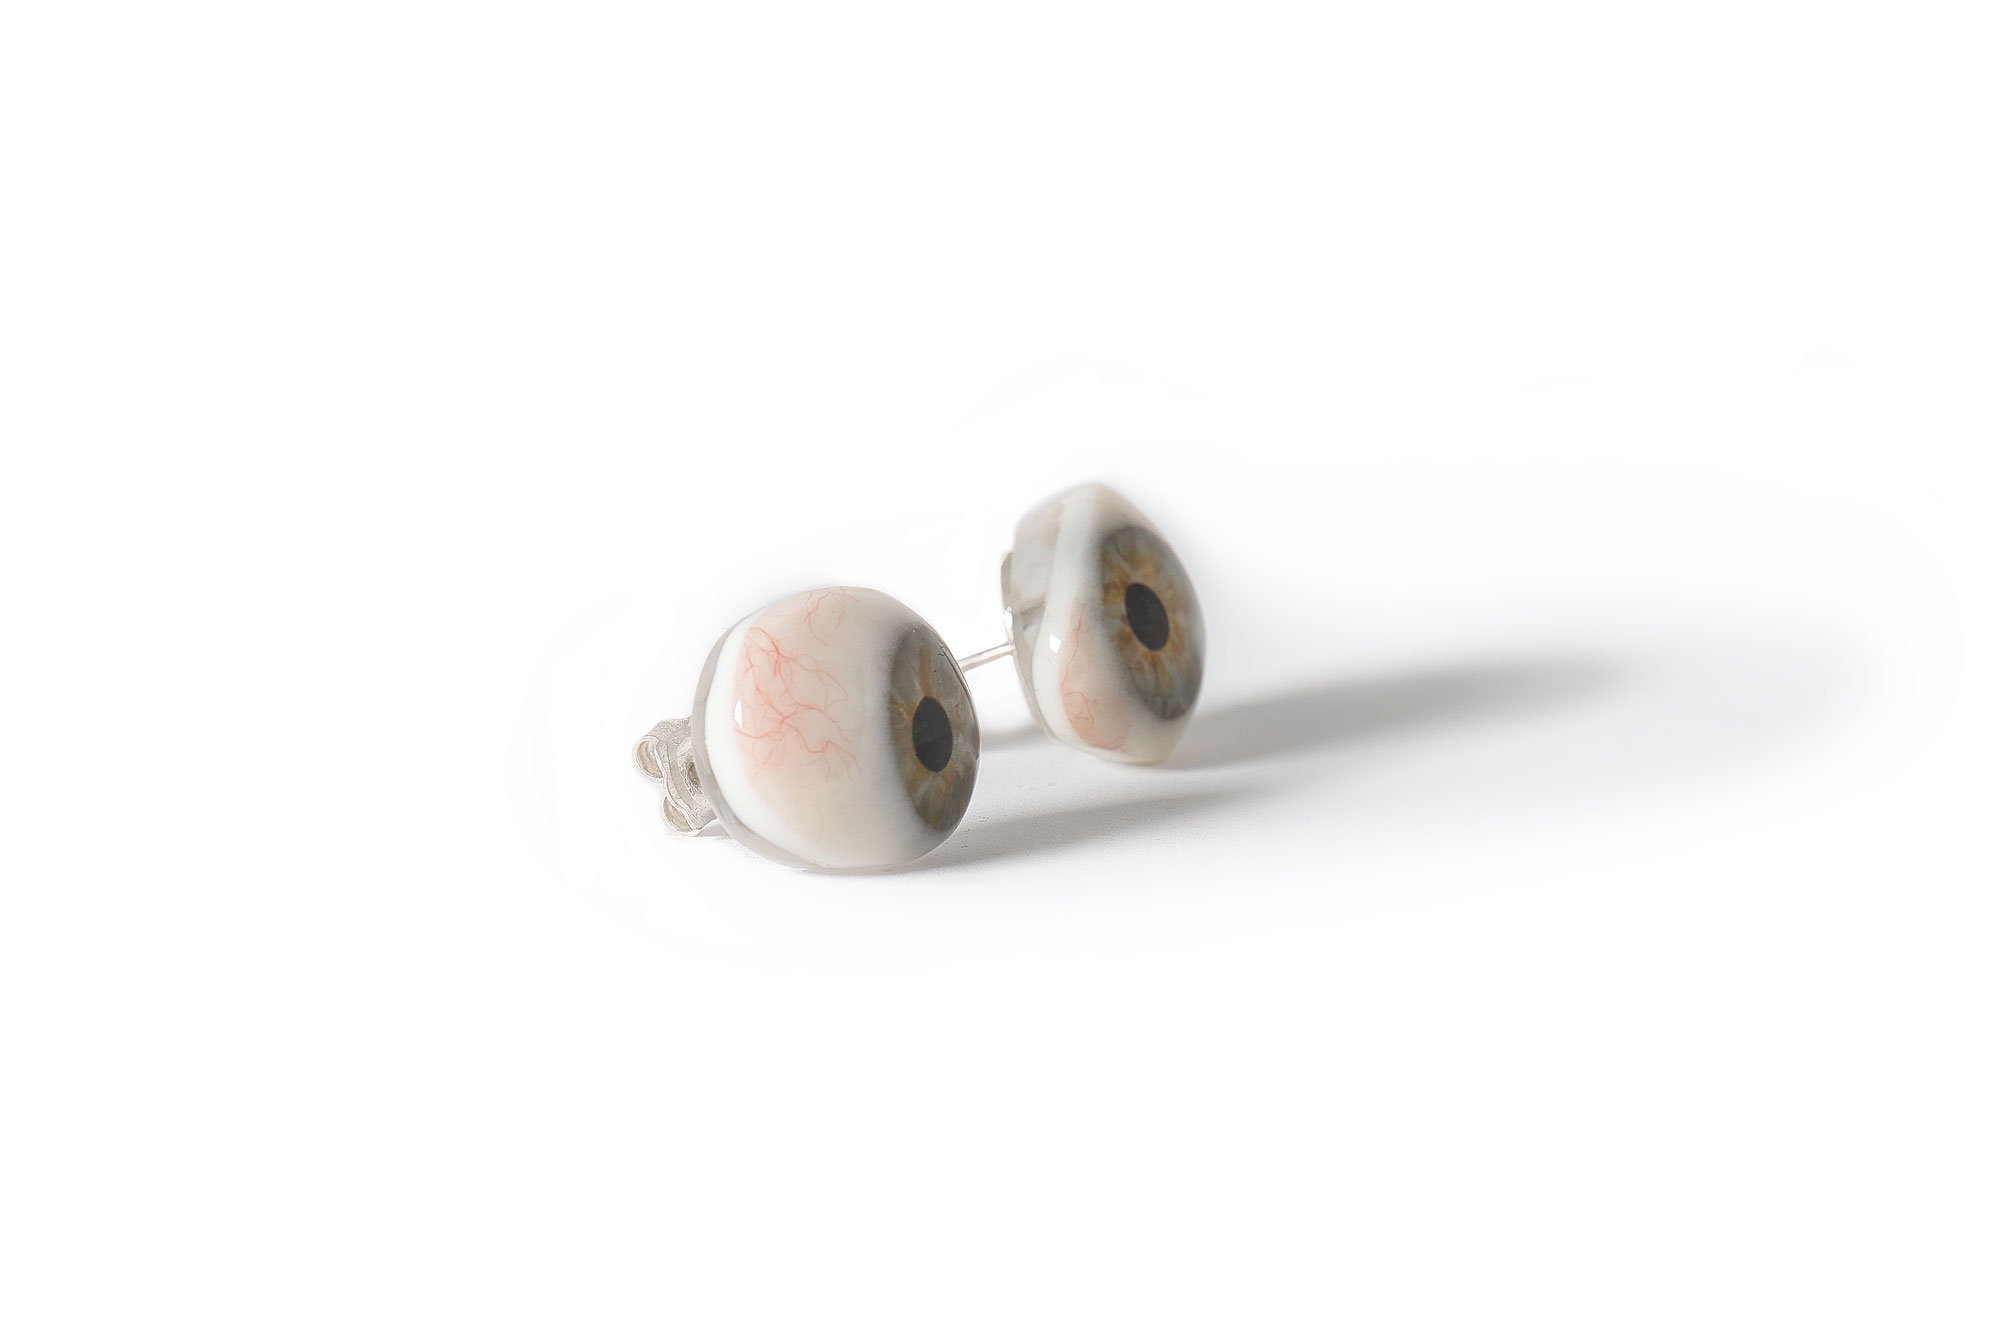 Boucles d'oreilles - argent et prothèse oculaire - 2022 - Photo: Yves Martin